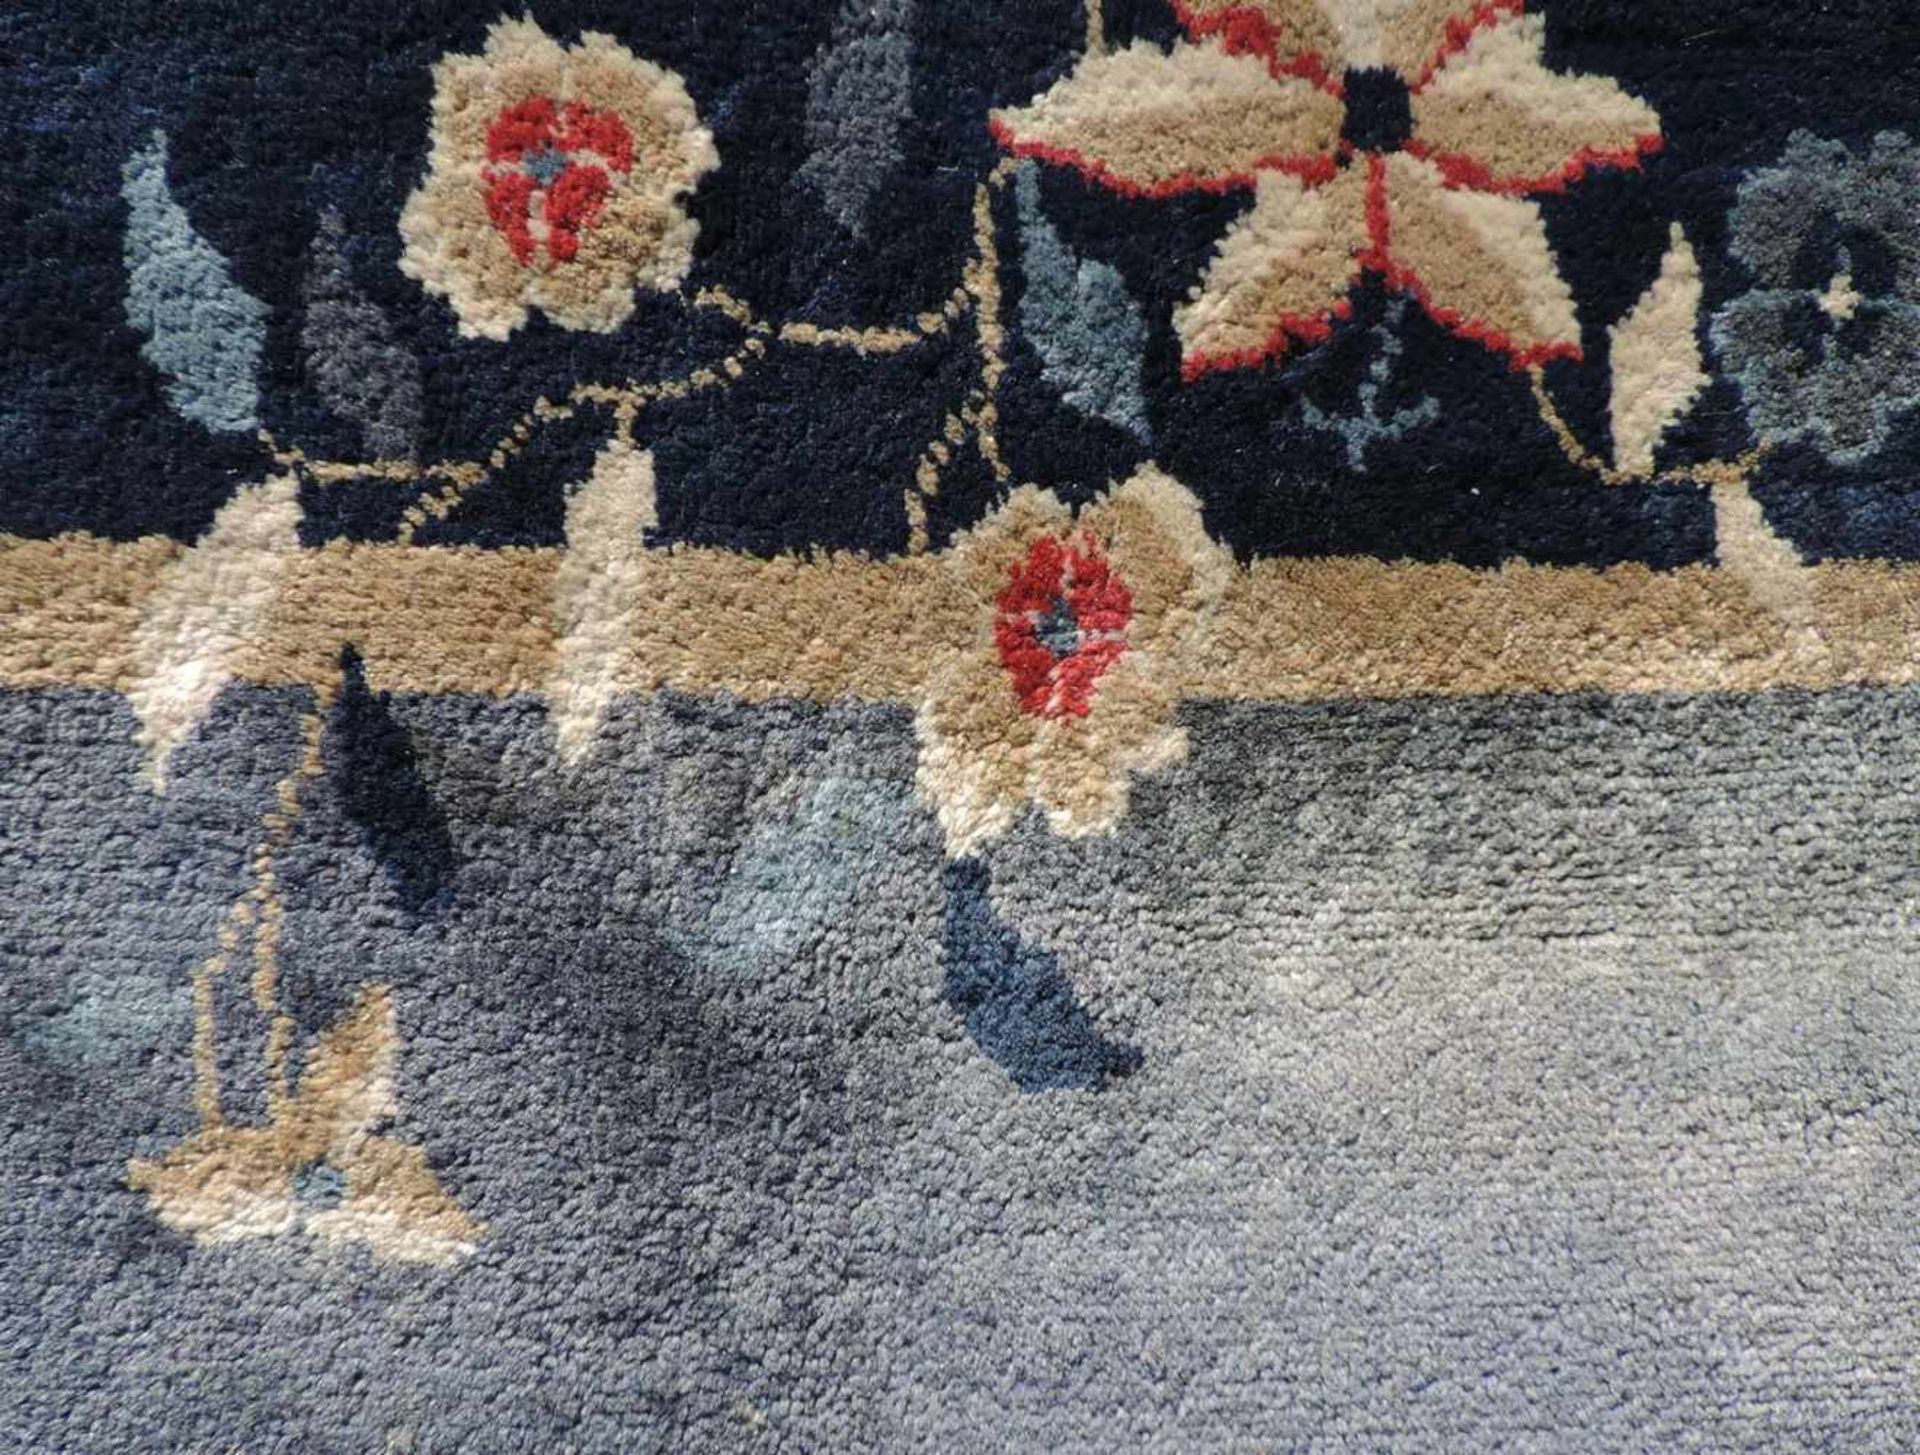 Peking Teppich. China. Antik. Um 1920 361 cm x 267 cm. Handgeknüpft. Mancesterwolle auf Baumwolle. - Bild 7 aus 8